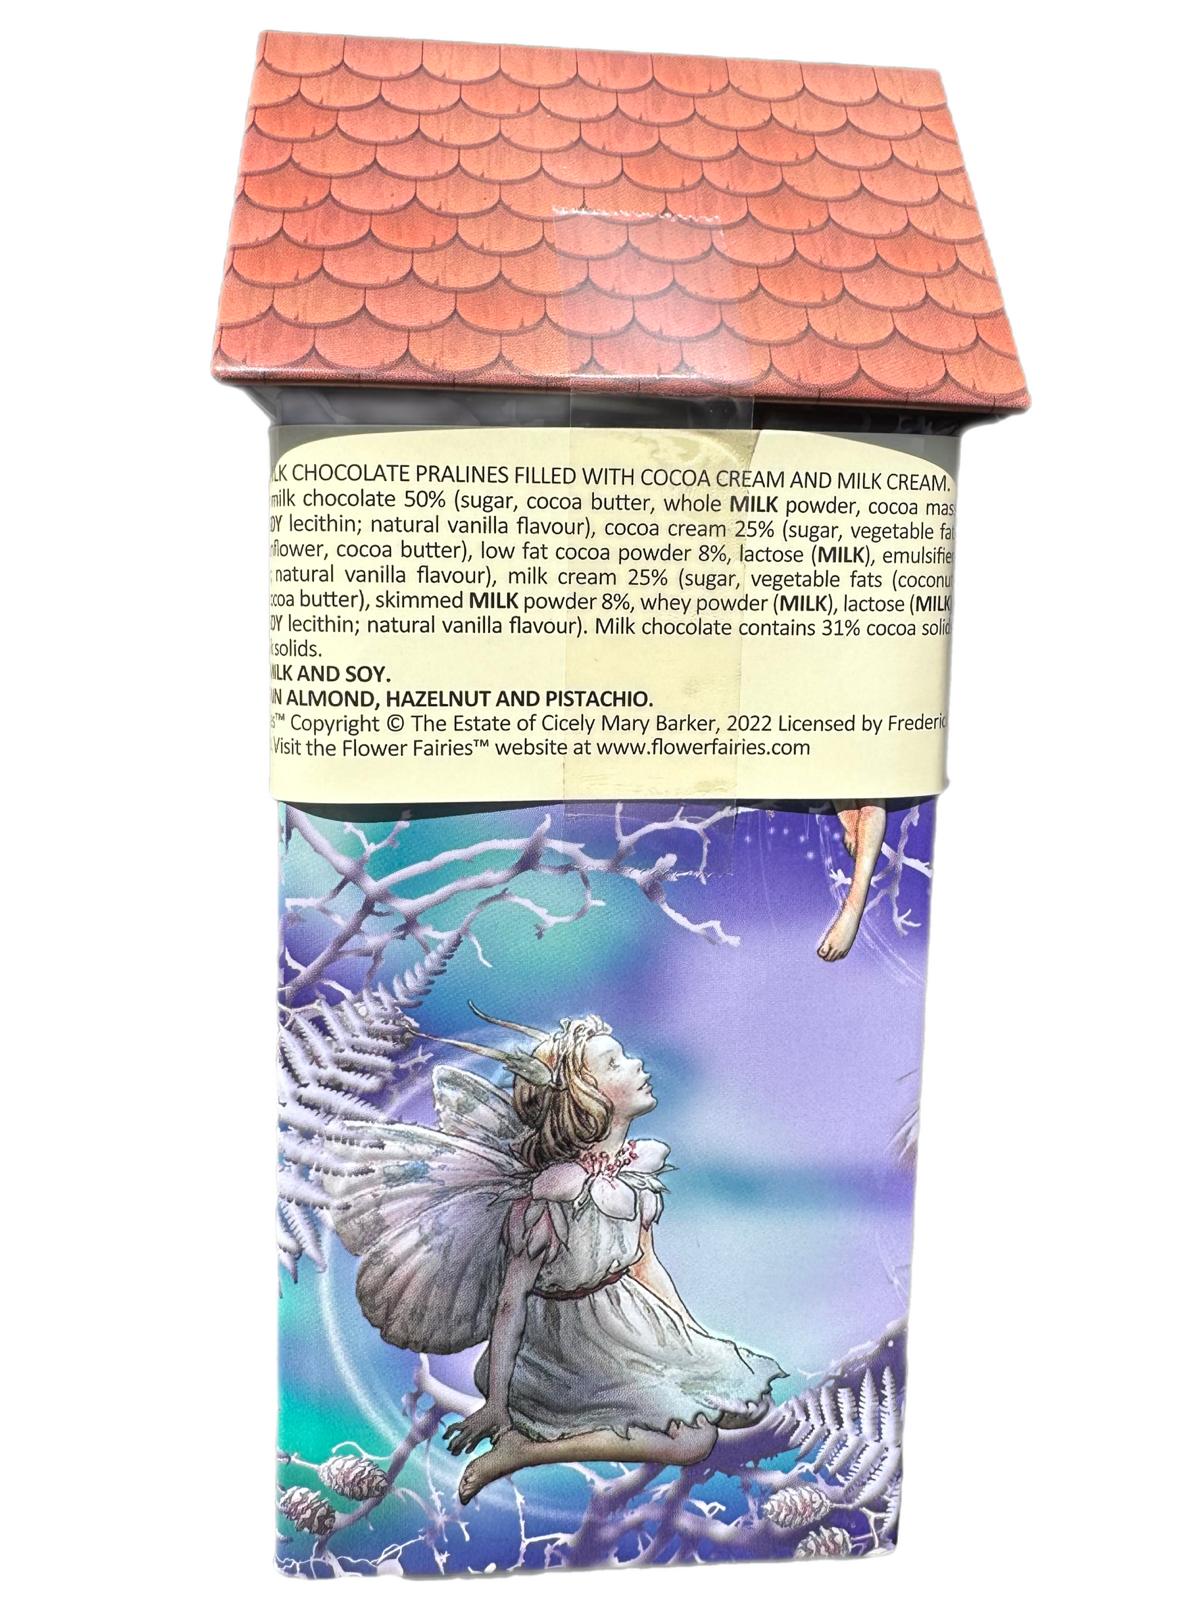 Marie Ange di Costa Italian Flower Fairy Music Box with Praline Chocolates--Casa degli Uccelli La Colpo 140g